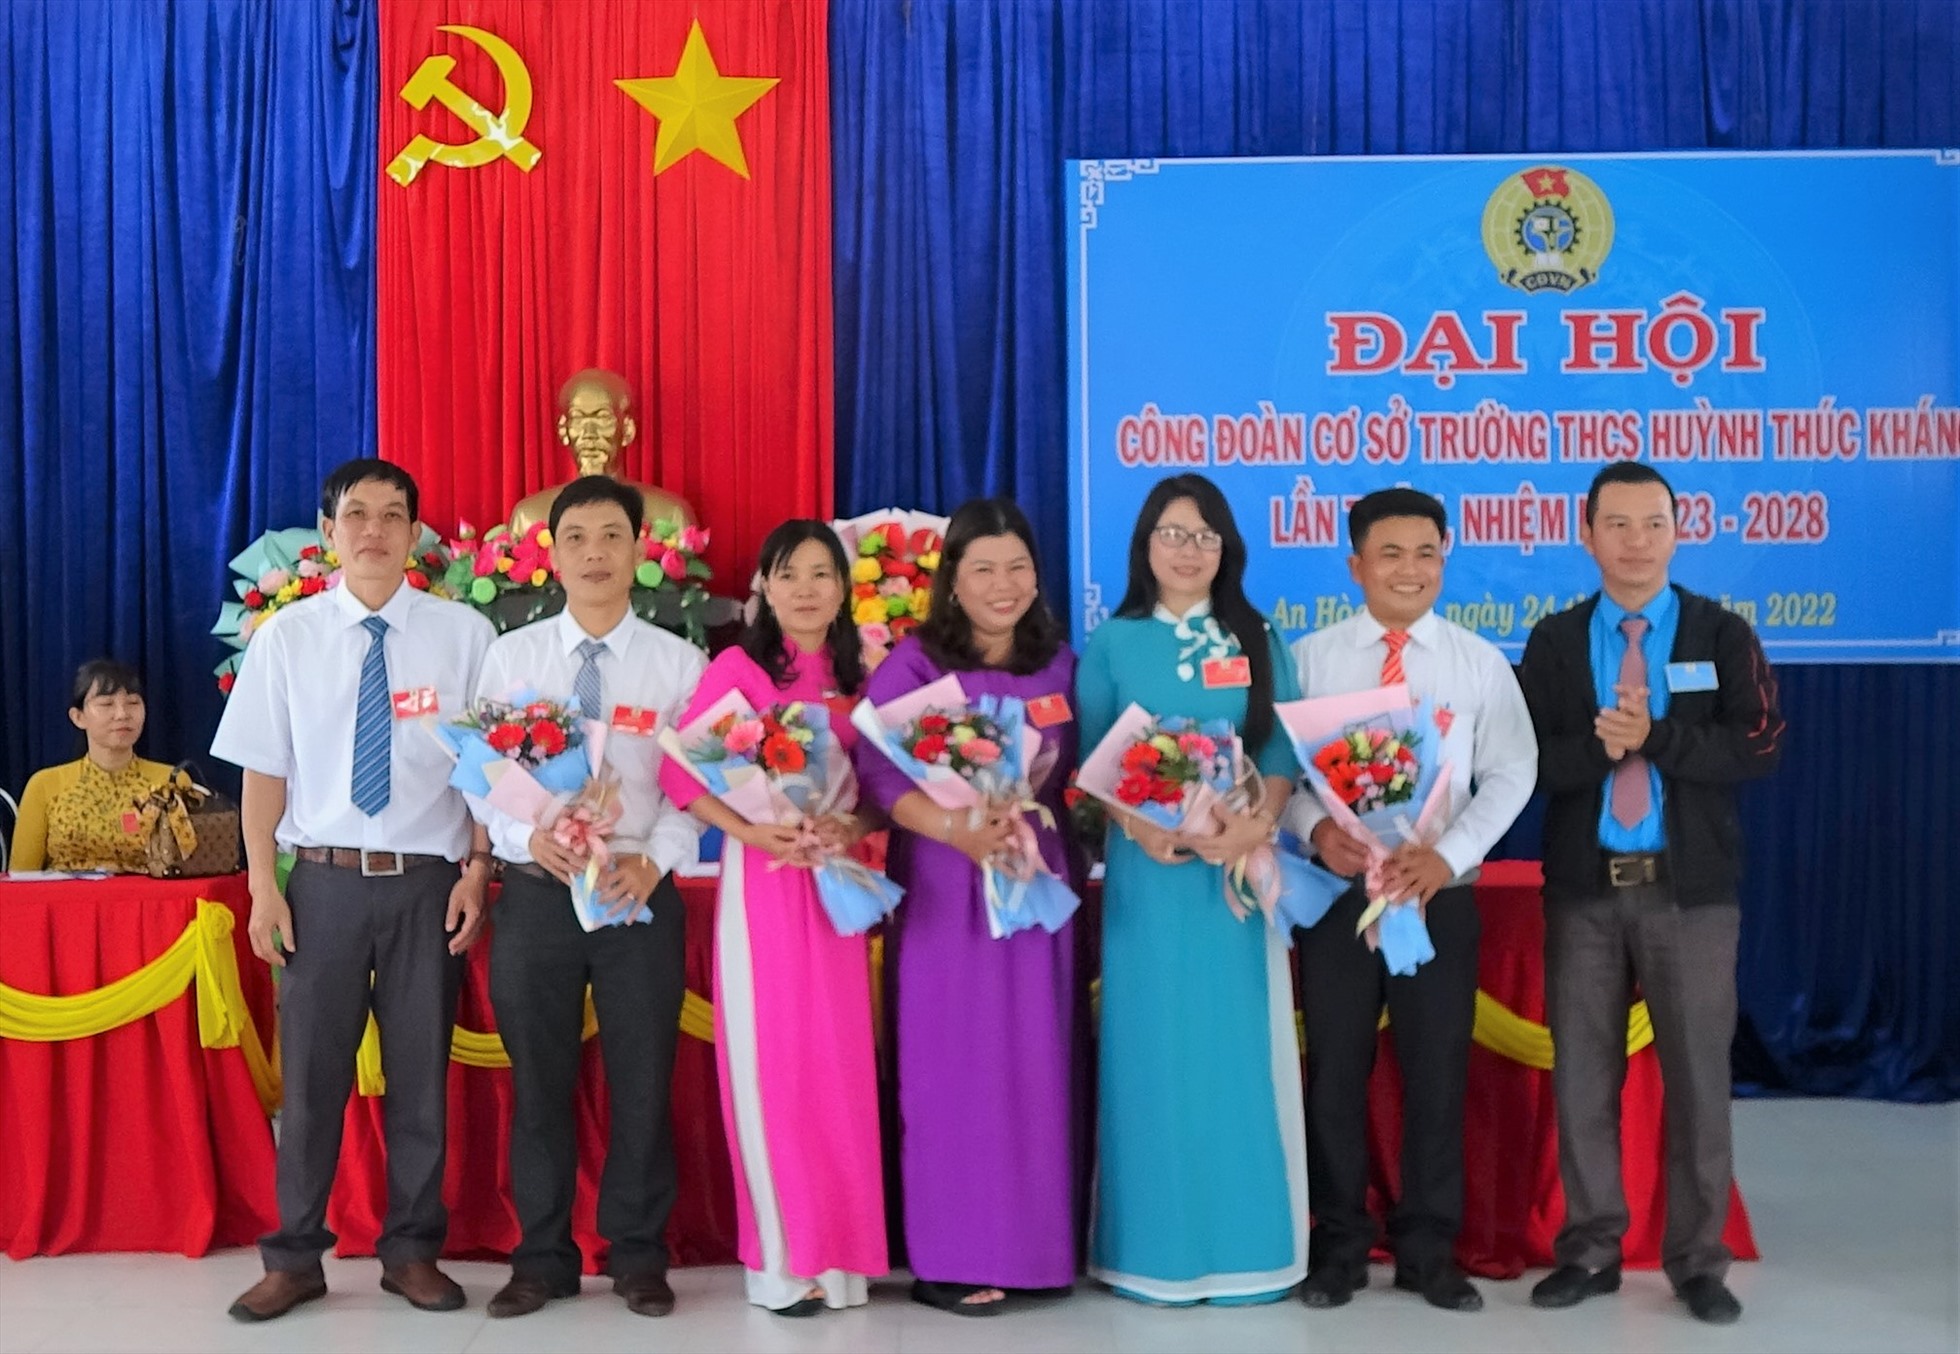 Ban chấp hành CĐCS Trường THCS Huỳnh Thúc Kháng nhiệm kỳ 2023-2028 ra mắt đại hội. Ảnh: Mạnh Tuấn